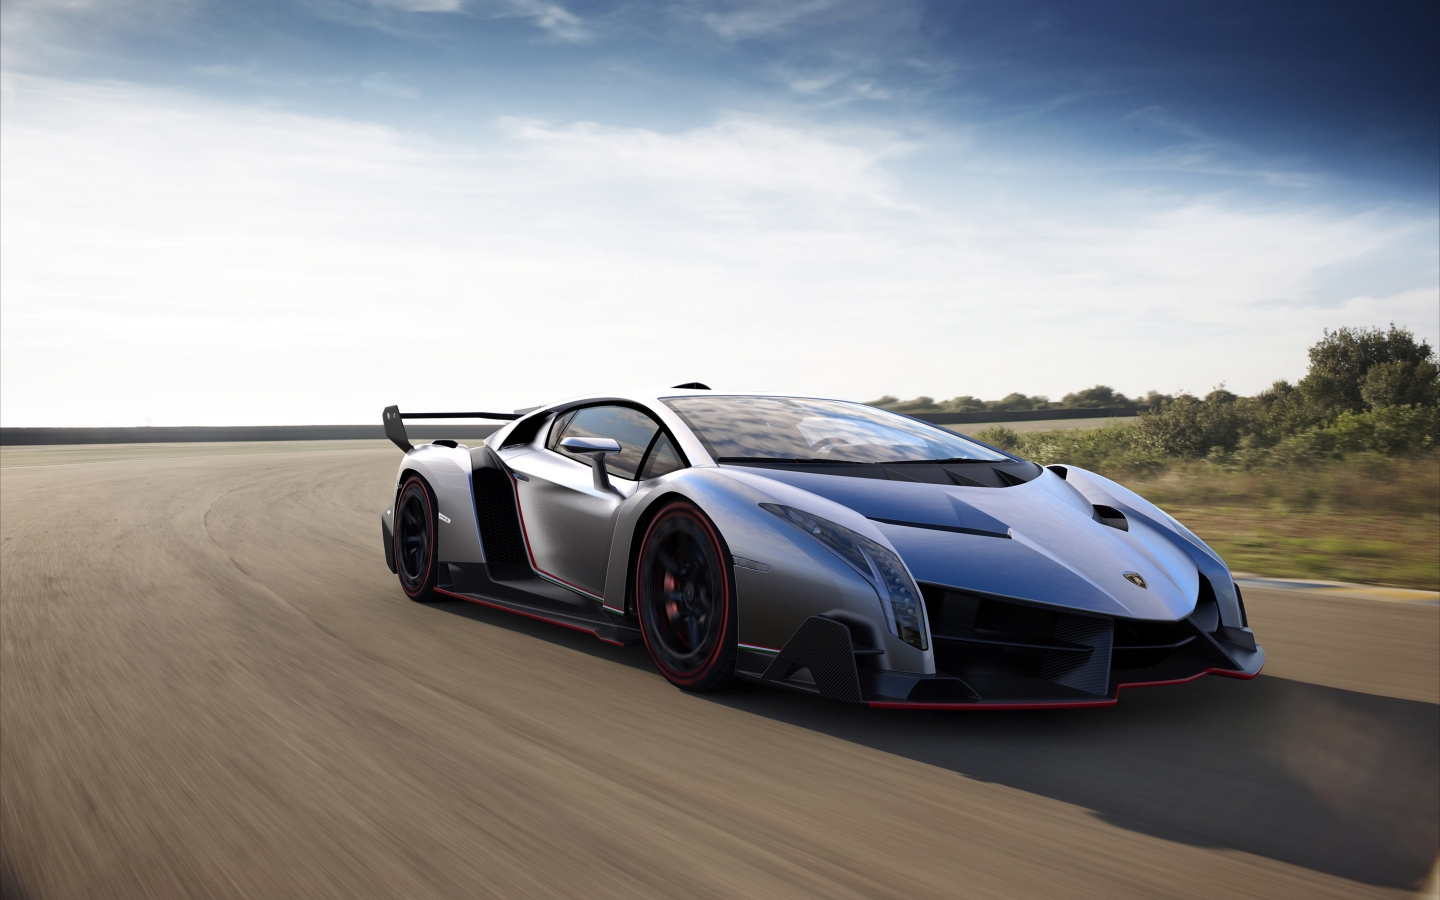 Lamborghini Veneno for 1440 x 900 widescreen resolution